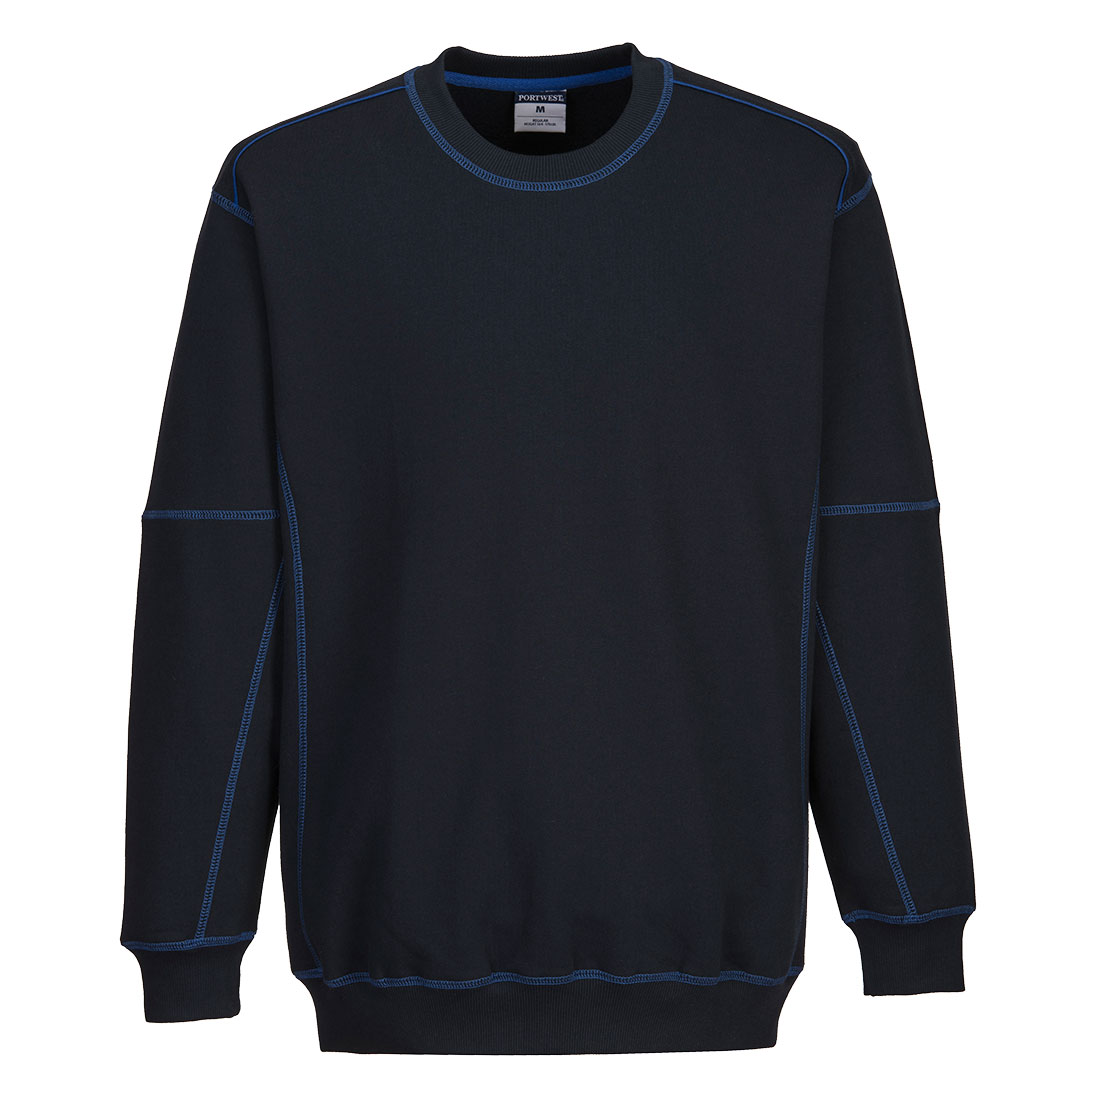 Essential Two Tone Sweatshirt - Navy/Royal